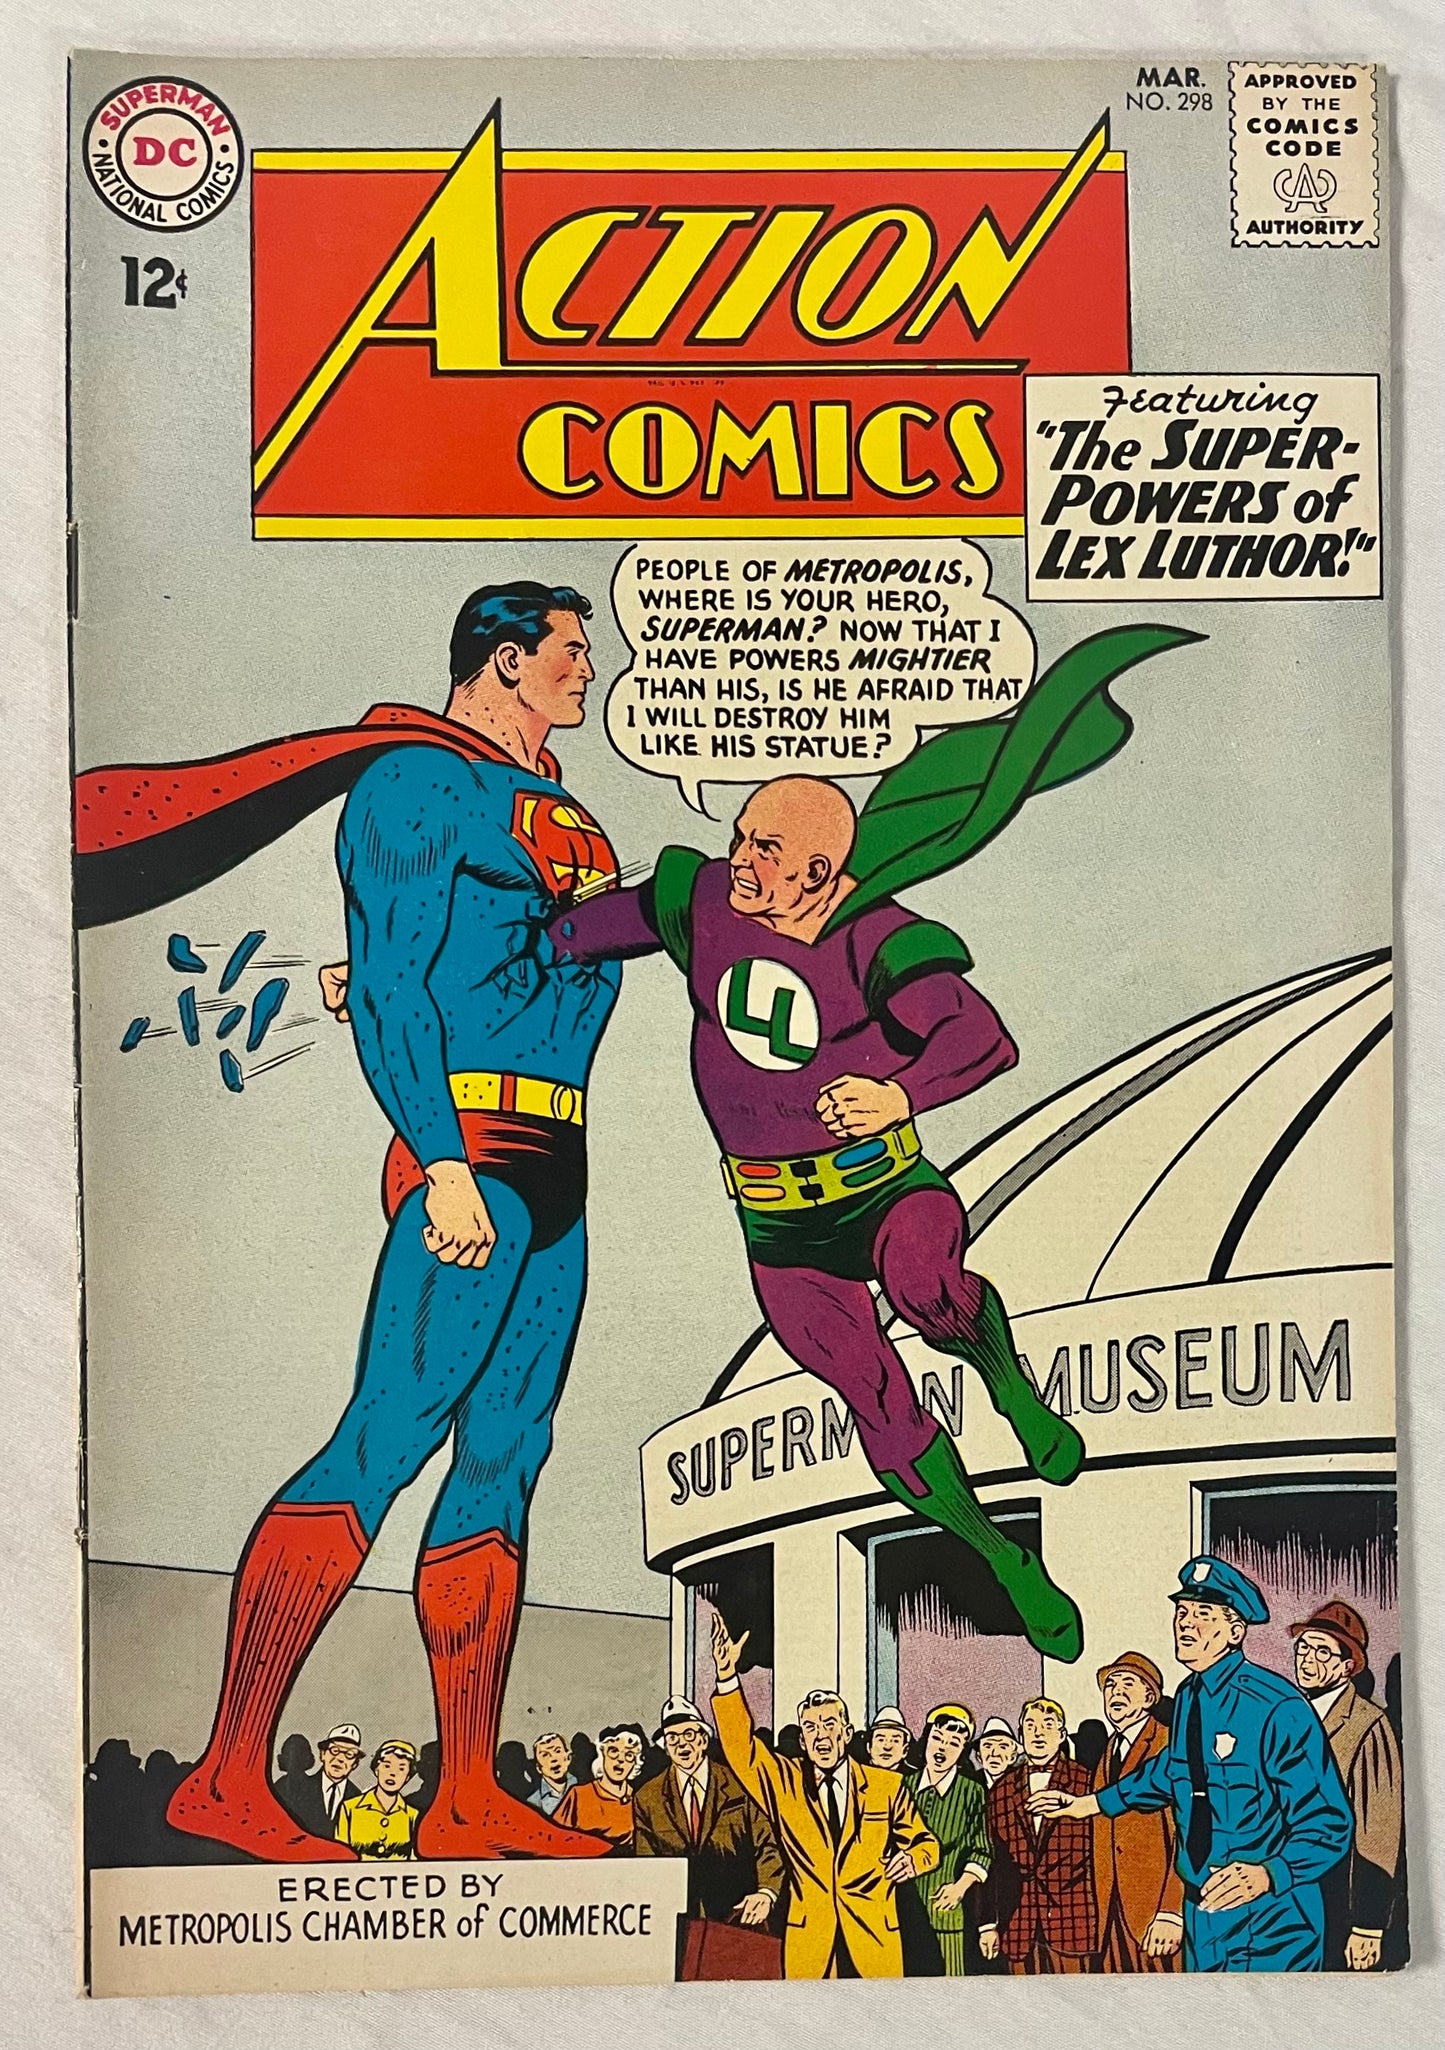 DC Comics Action Comics No. 298